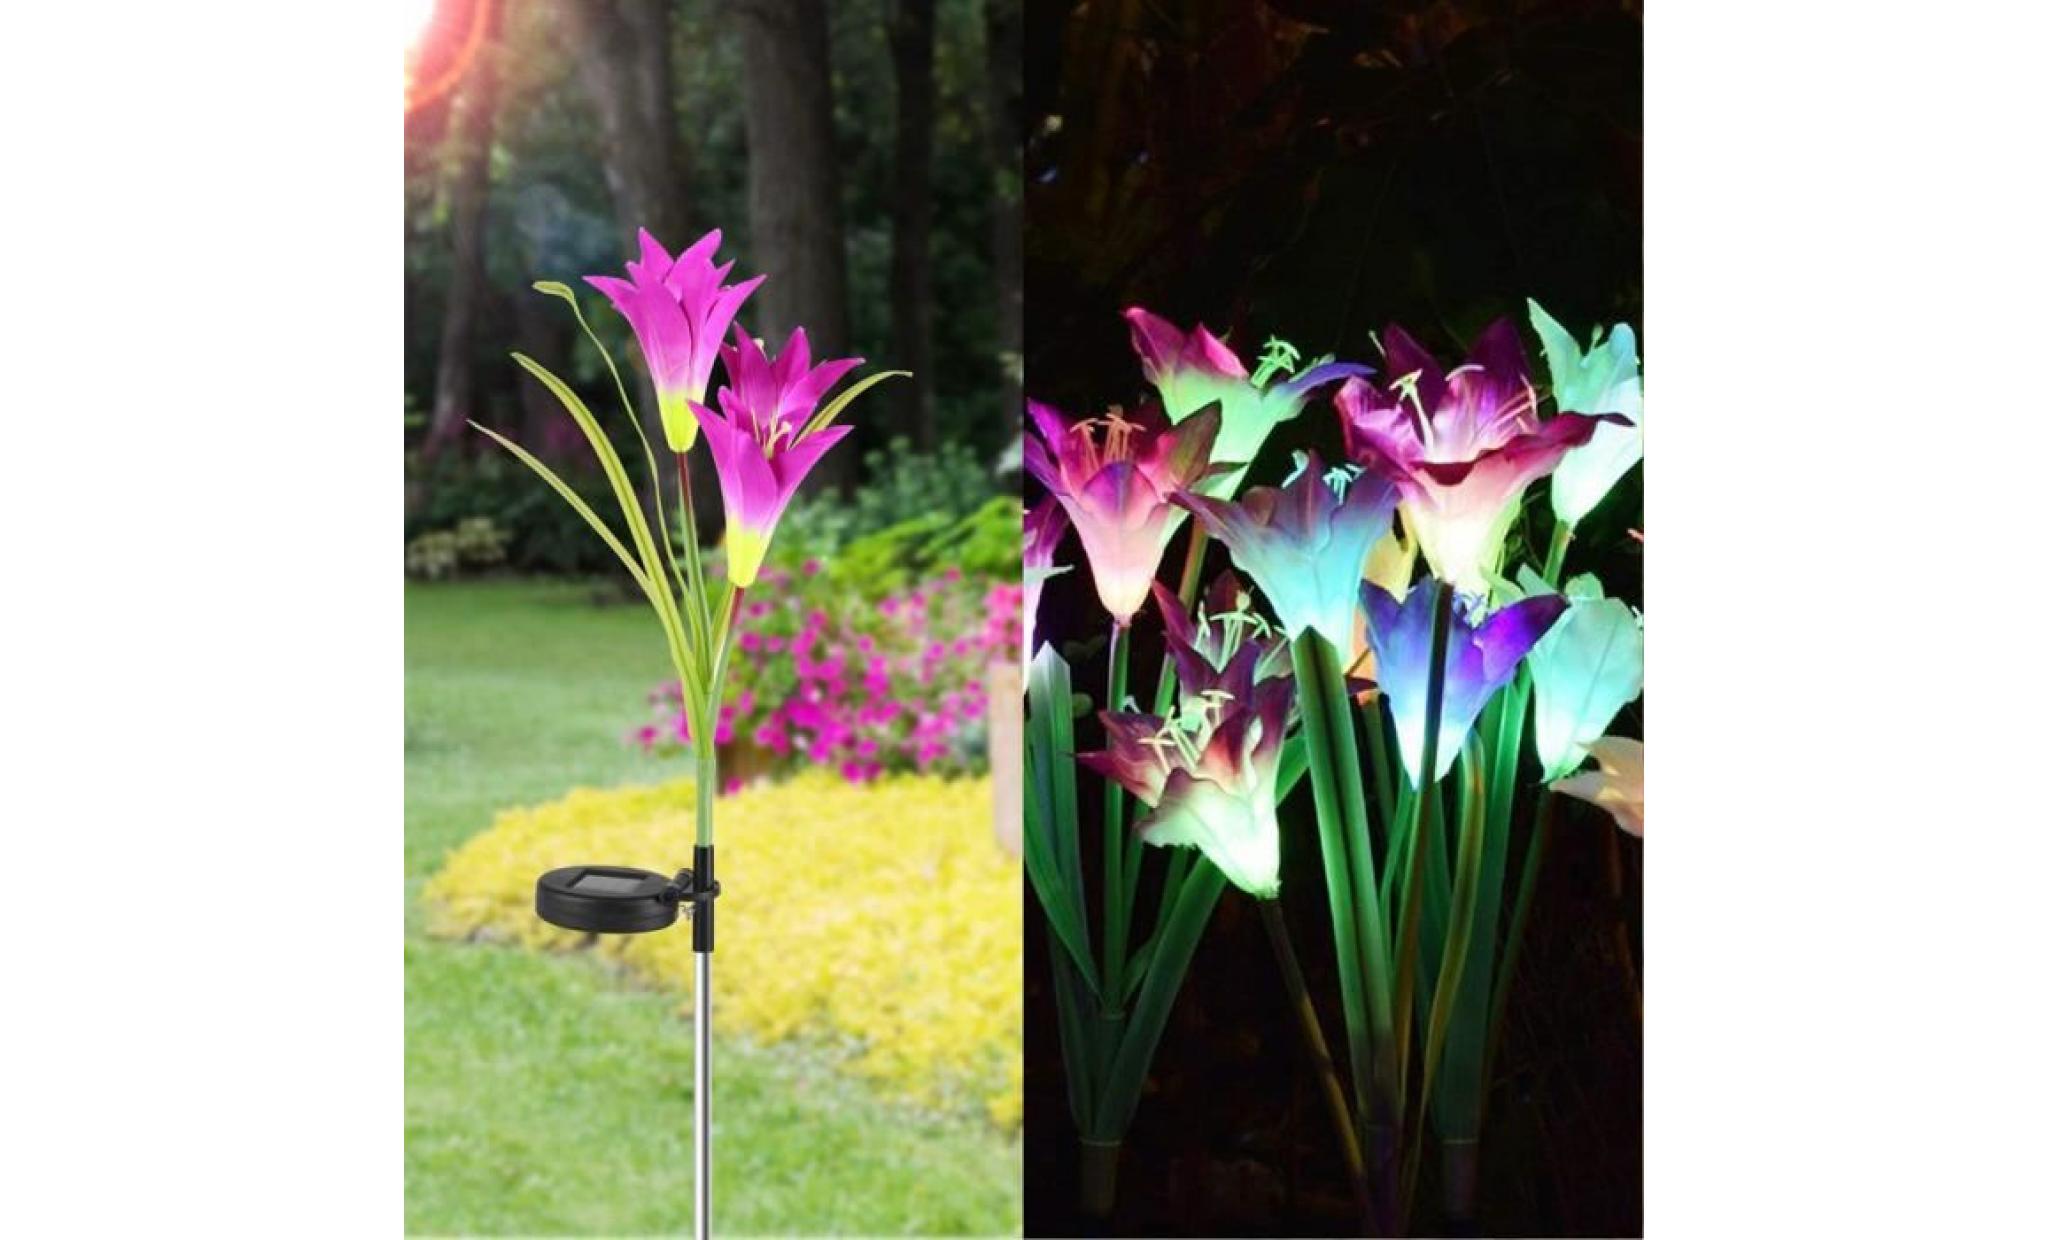 borne solaire 2 pcs fleur de lys jardin solaire actionné pieu lumières lumières fleurs artificielles led lumière 040